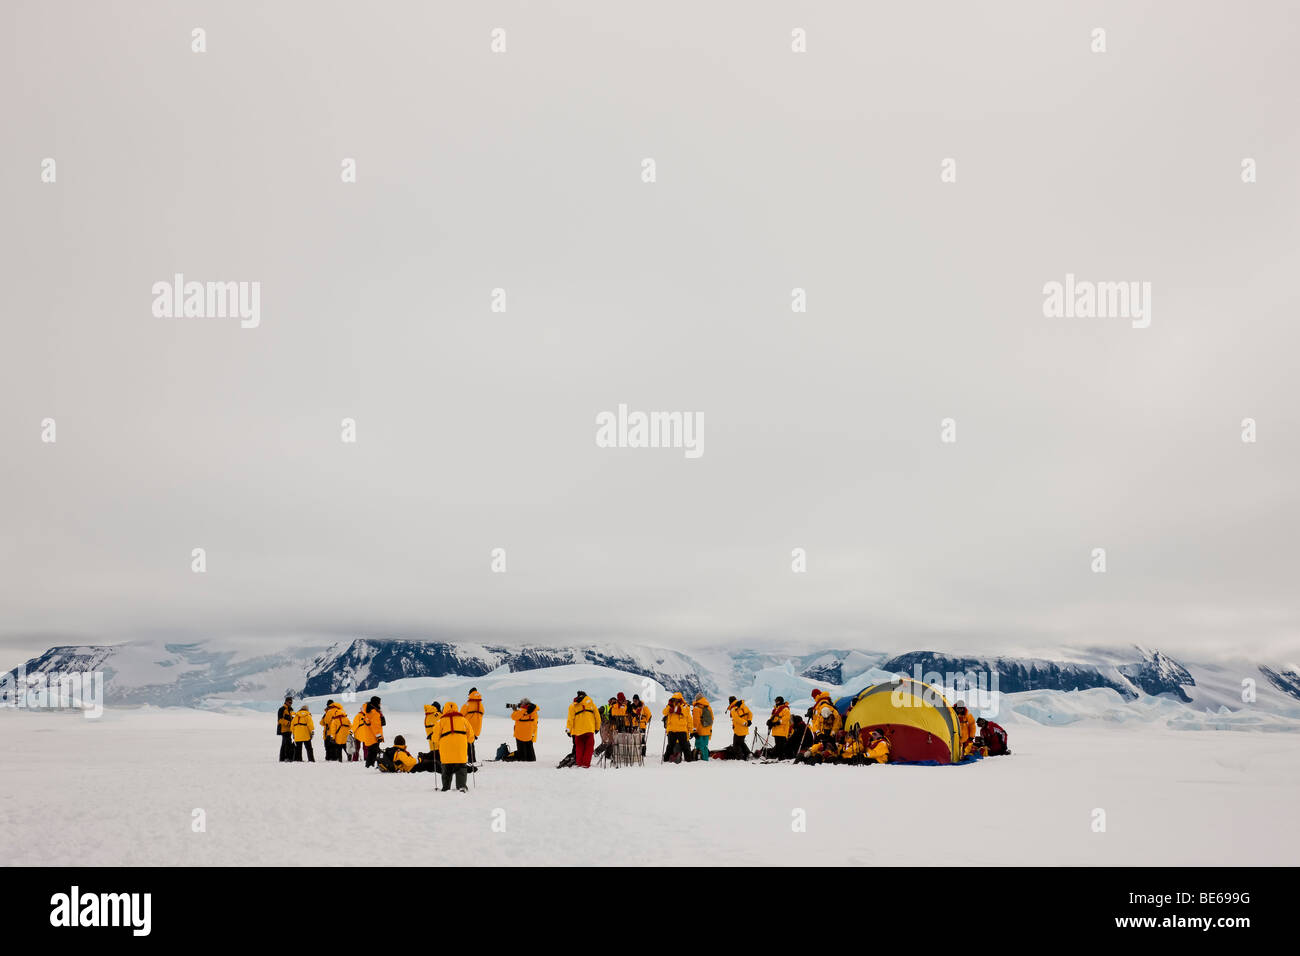 Groupe de touristes eco de l'Antarctique se rassembleront sur la neige près de montagnes couvertes de neige glaciers portant des parkas jaune vif et jaune tente survuval Banque D'Images